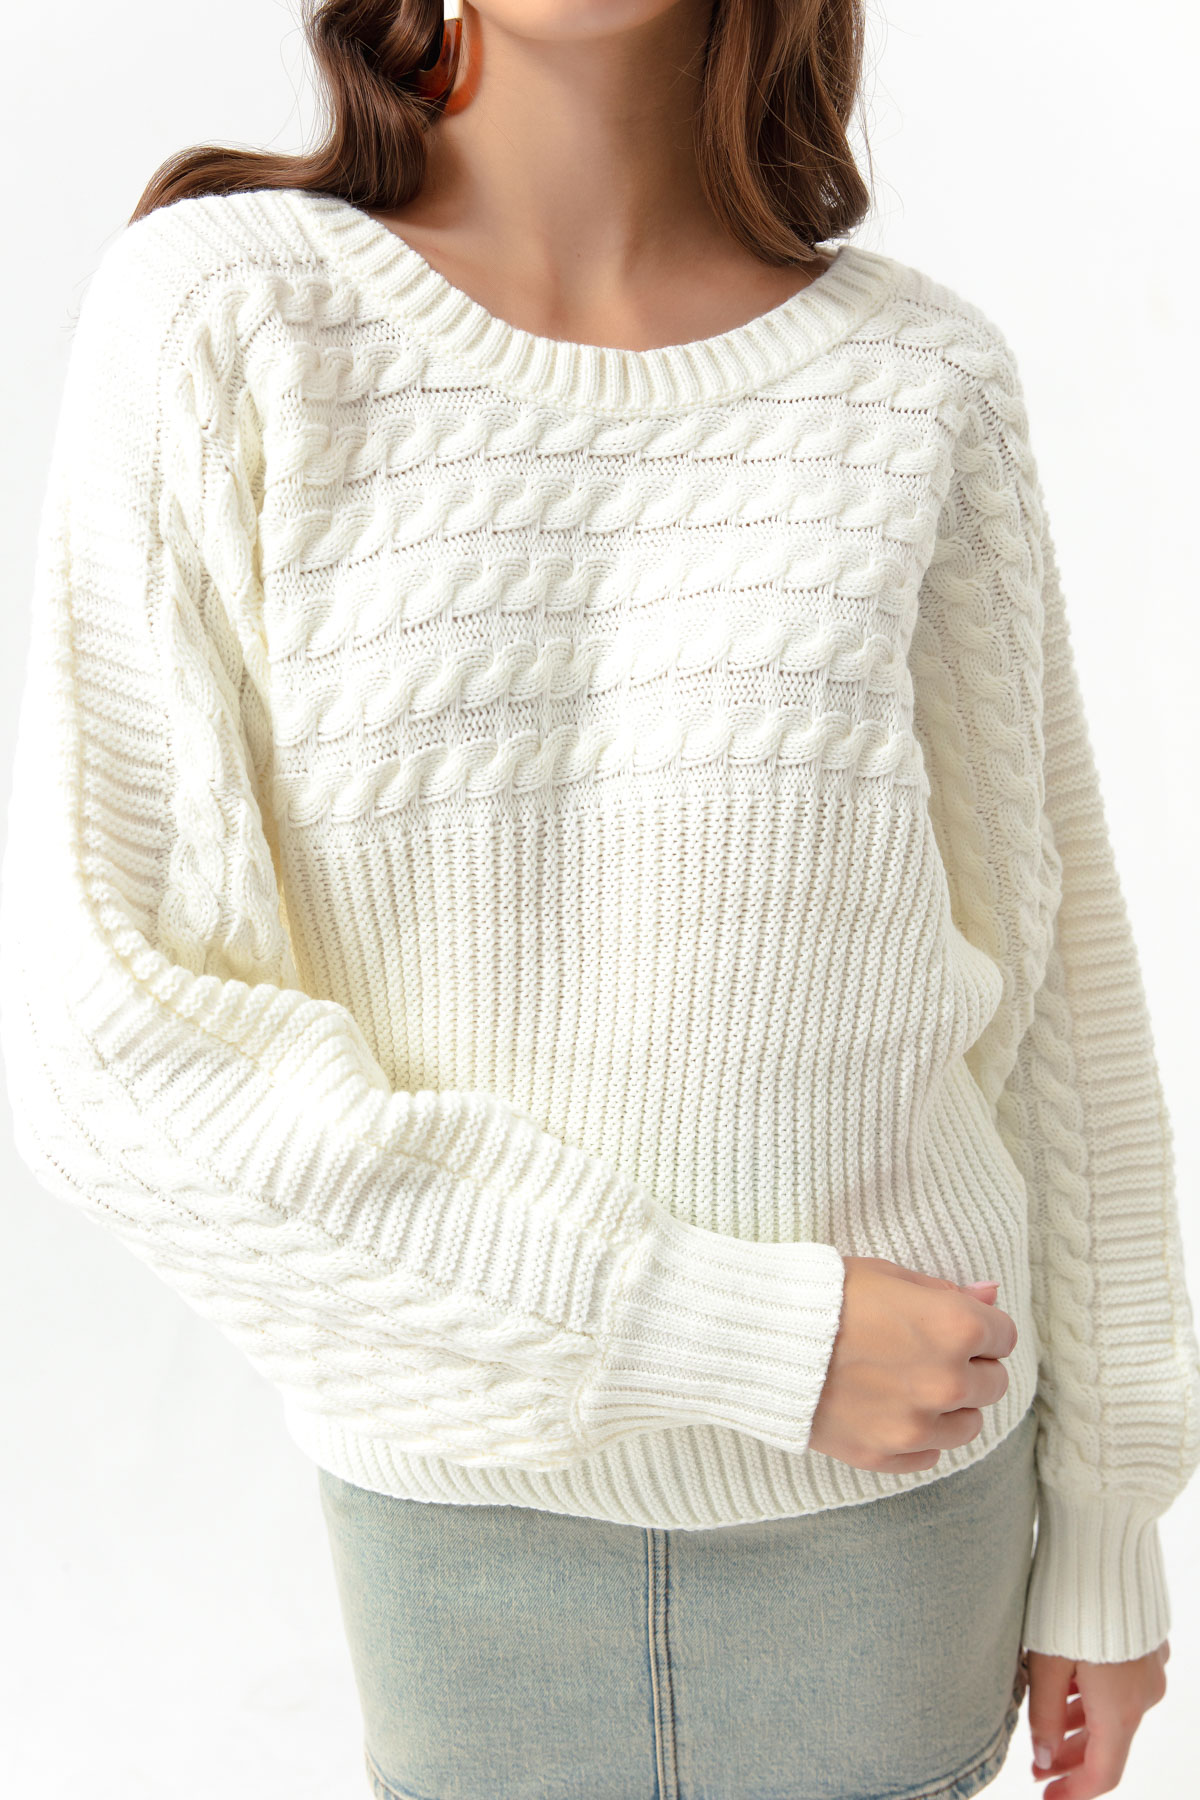 Women's White Boat Neck Knitwear Sweater